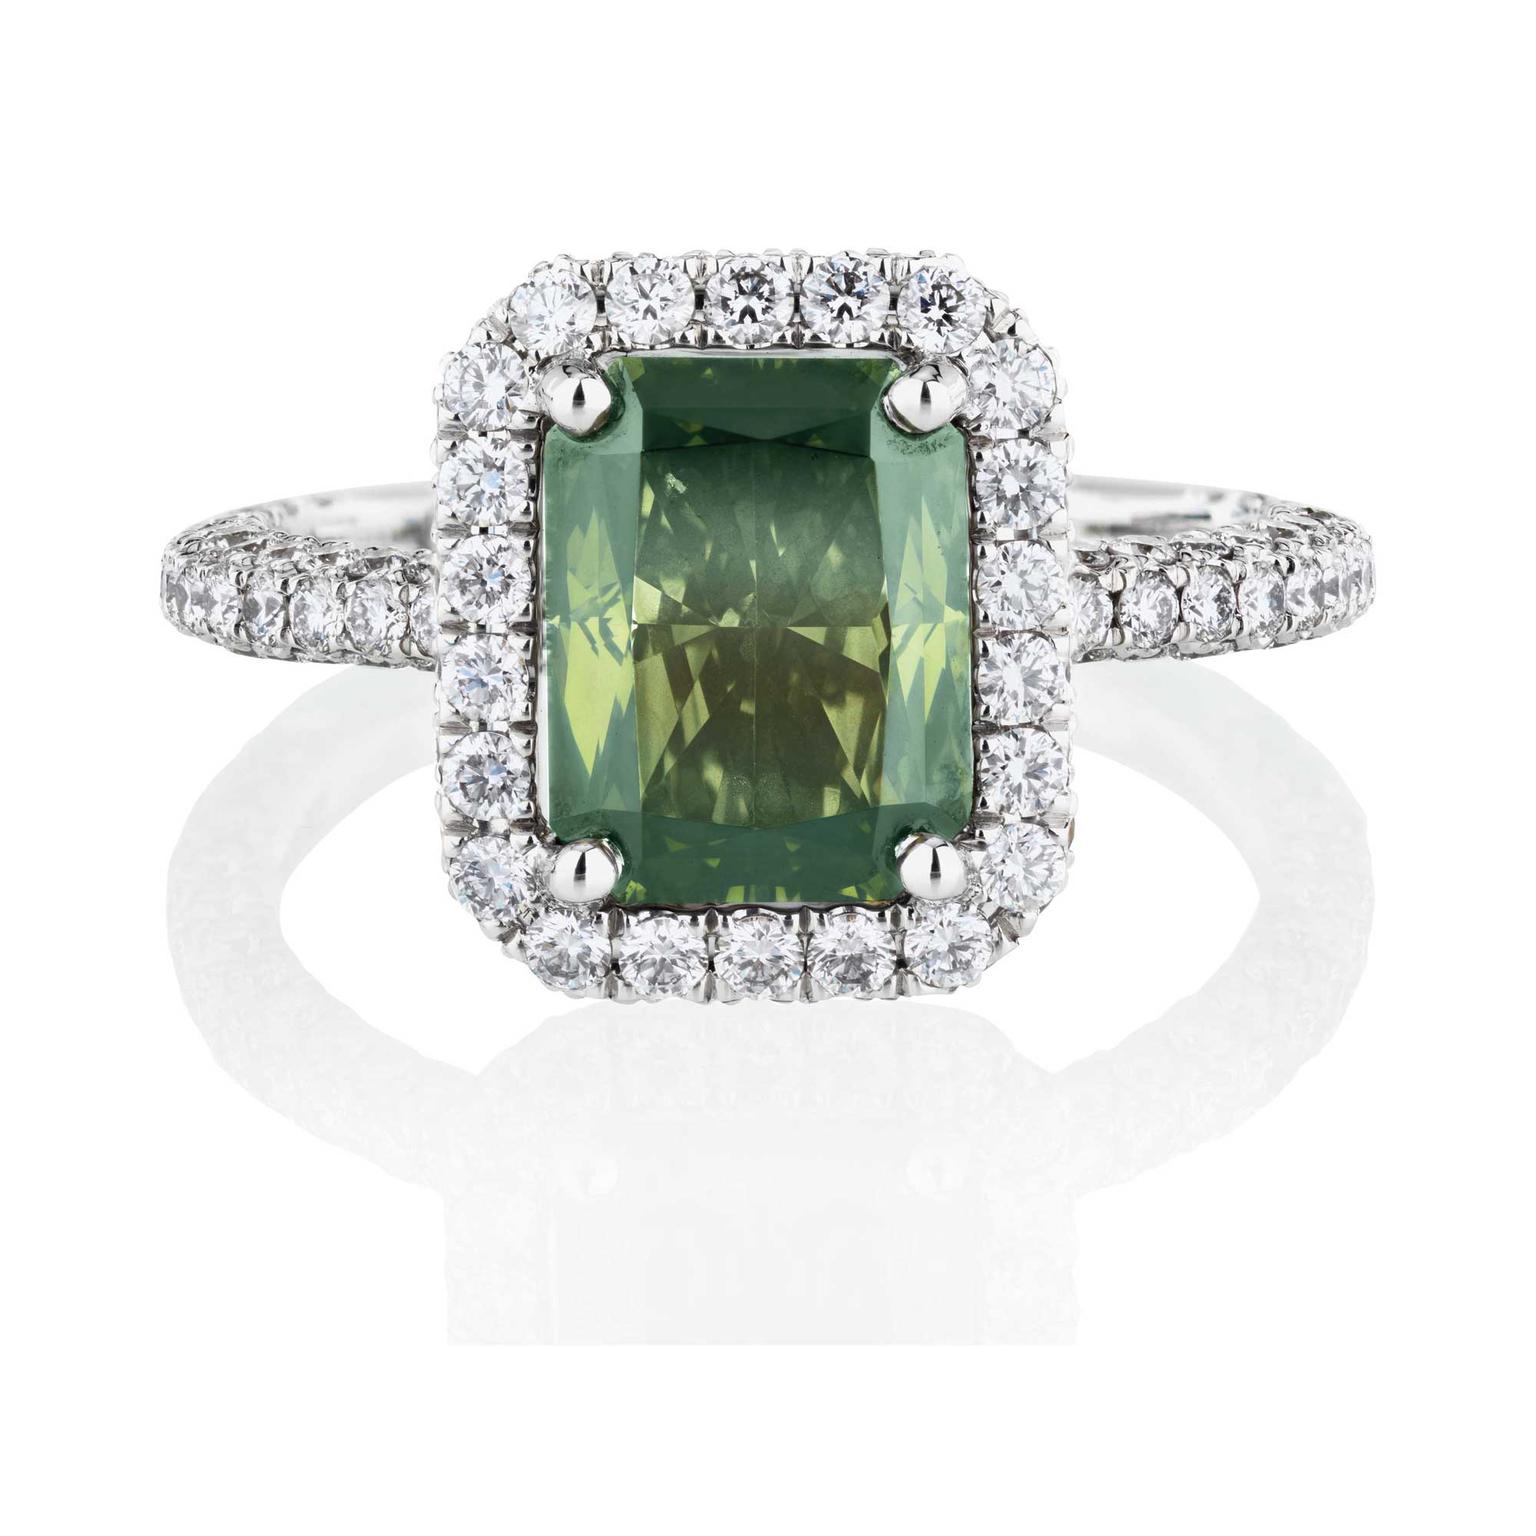 De Beers Aura Fancy Dark yellowish green emerald-cut solitaire ring